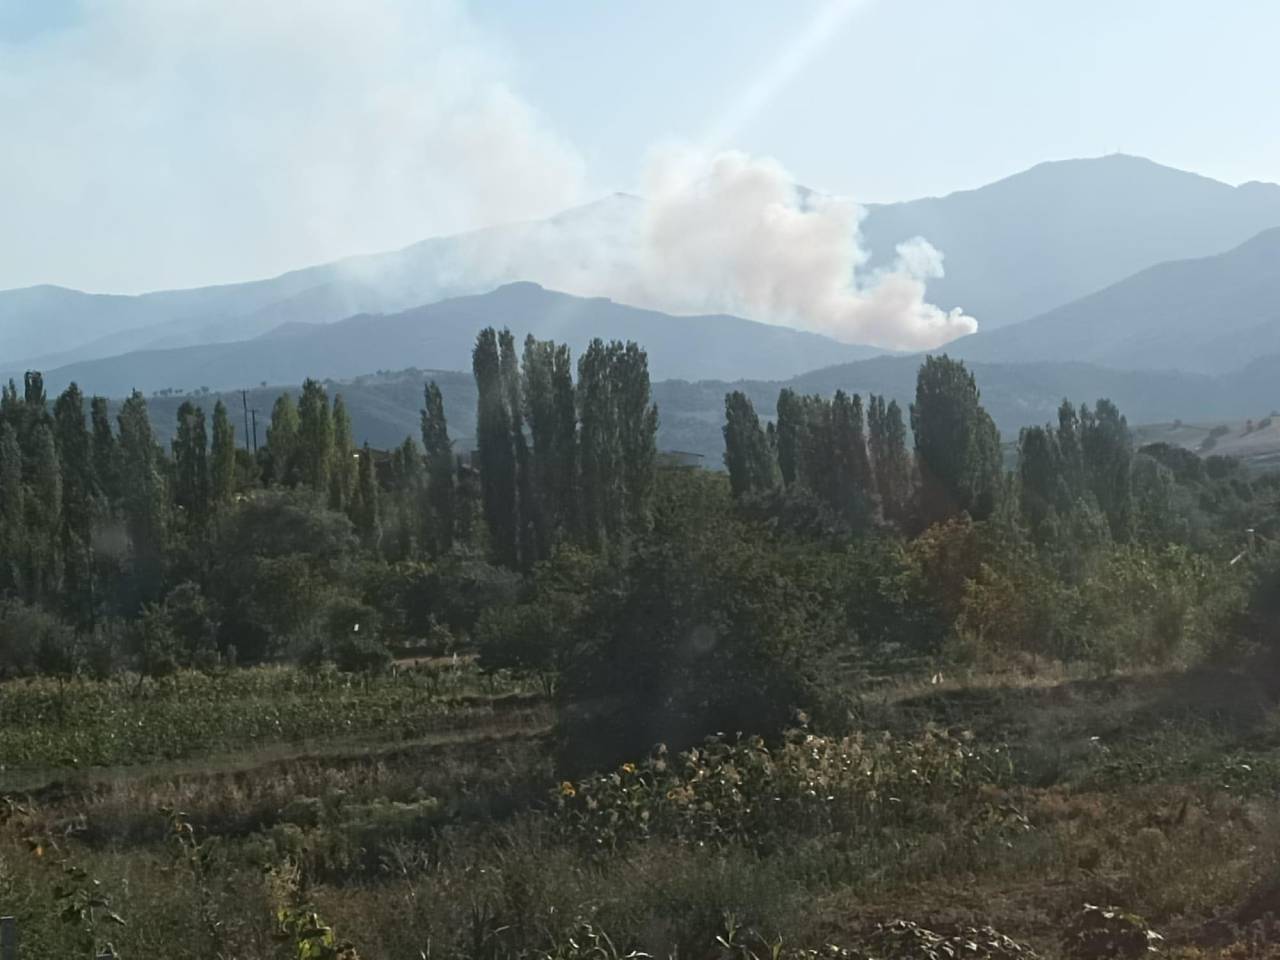 Kütahya'da Orman Yangını